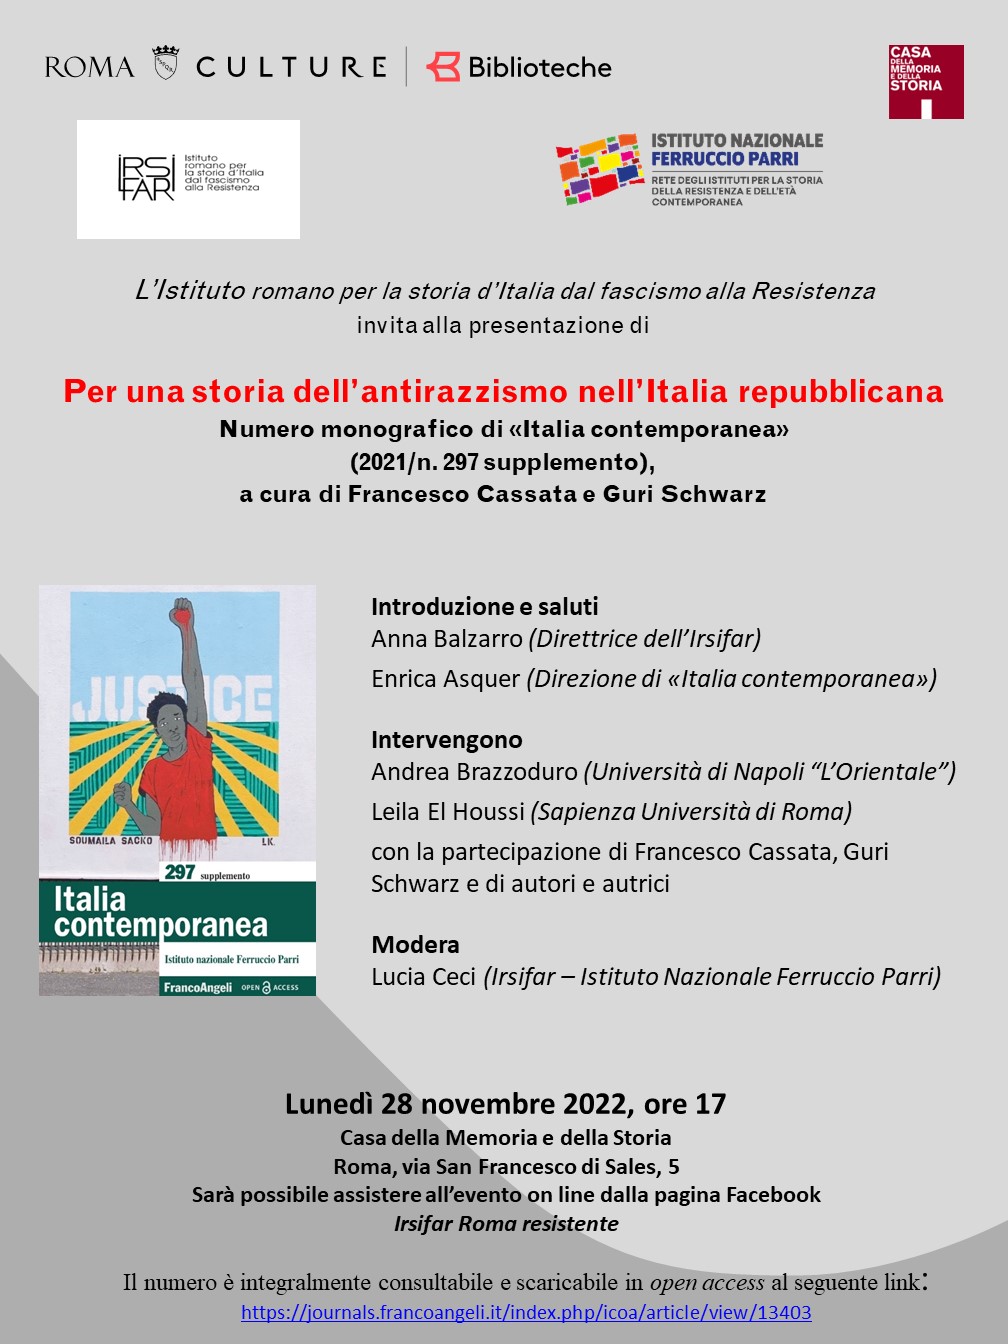 Per una storia dell’antirazzismo nell’Italia repubblicana — Presentation